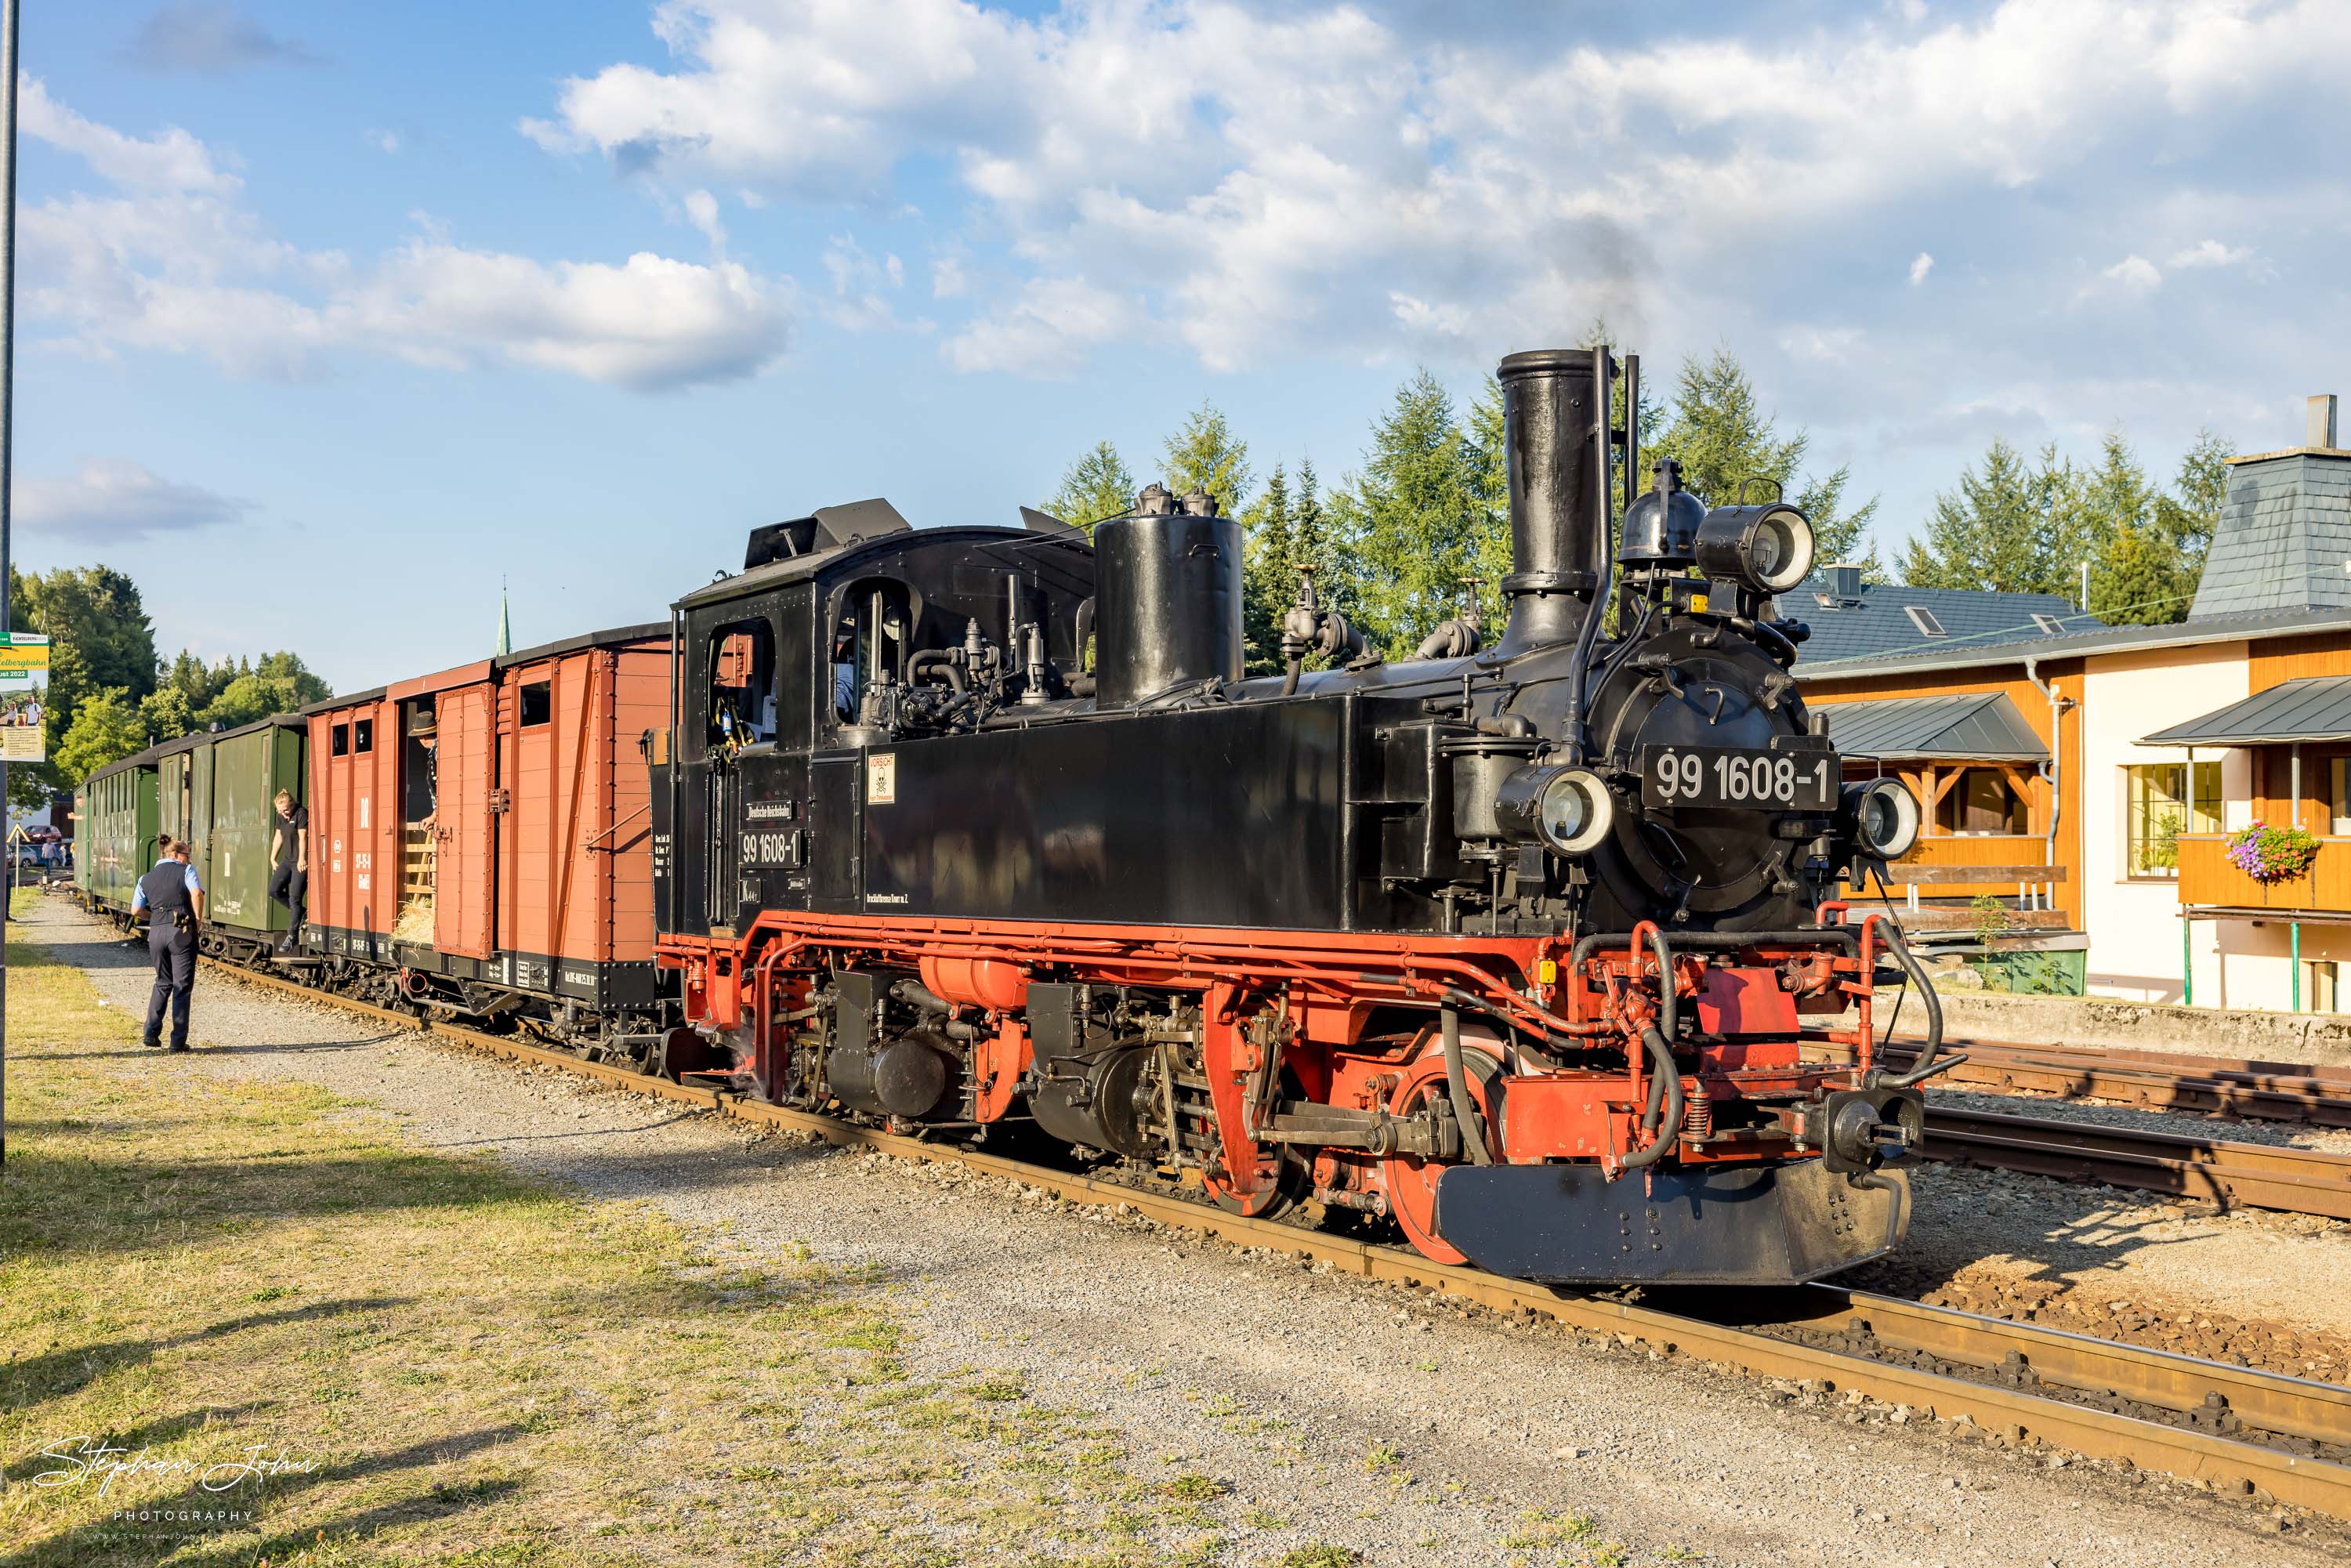 Zug P 1023 mit Lok 99 1608-1 nach Oberwiesenthalsteht in Hammerunterwiesenthal